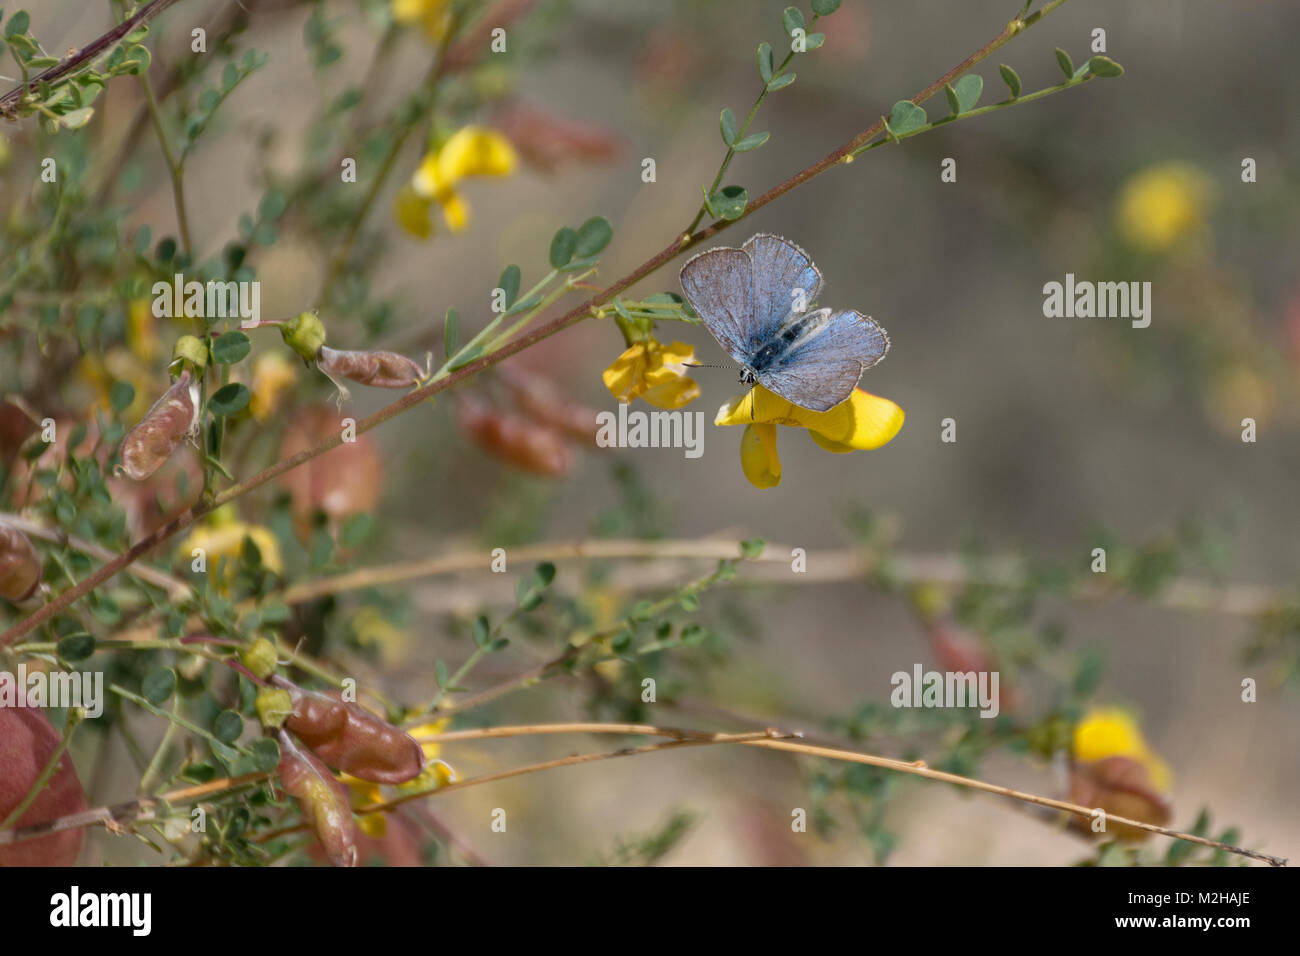 Mariposa azul común Polyommatus icaro con alas abiertas por encima de la Flor amarilla en un arbusto del senna de la vejiga Colutea istria en el desierto de negev en israel Foto de stock